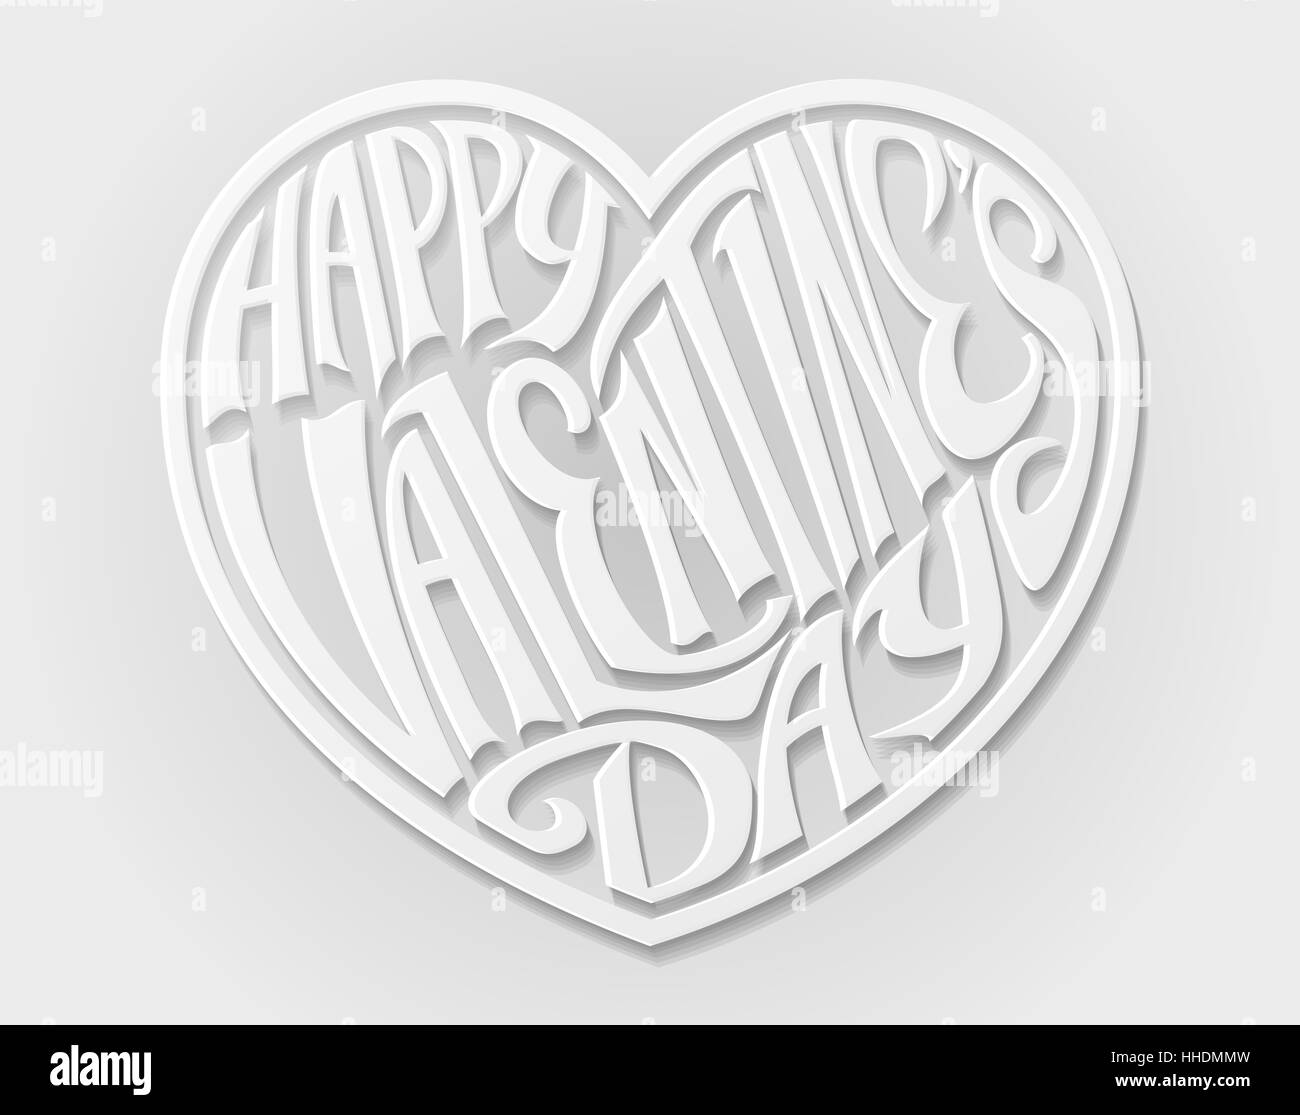 Una carta artigianale di bianco in stile felice il giorno di San Valentino cuore lettere progettazione di testo Foto Stock